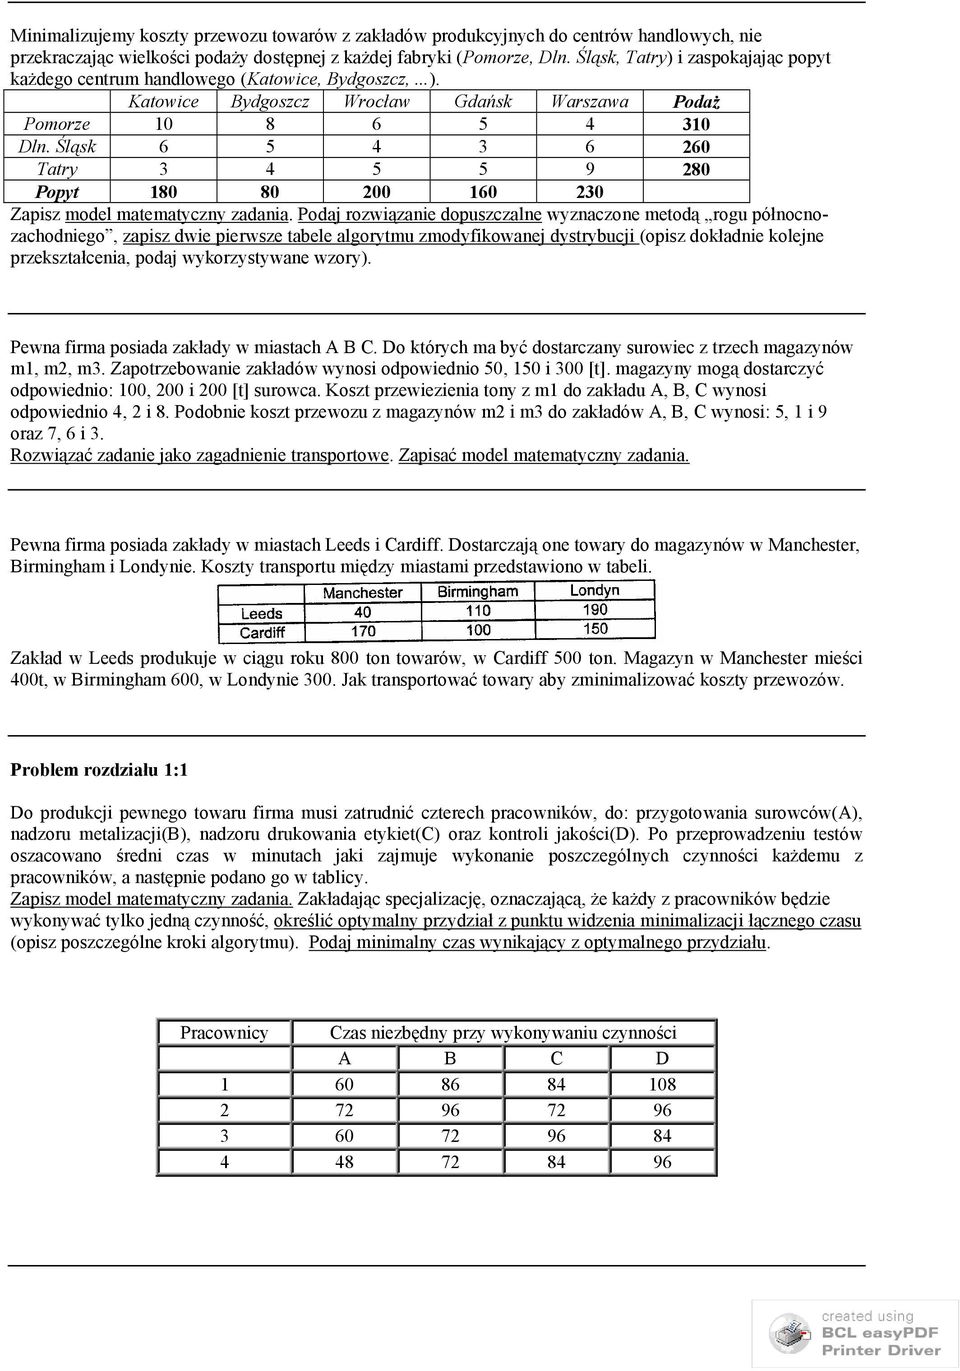 Śląsk 6 5 4 3 6 60 Tatry 3 4 5 5 9 80 Popyt 80 80 00 60 30 Zapisz model matematyczny zadania.